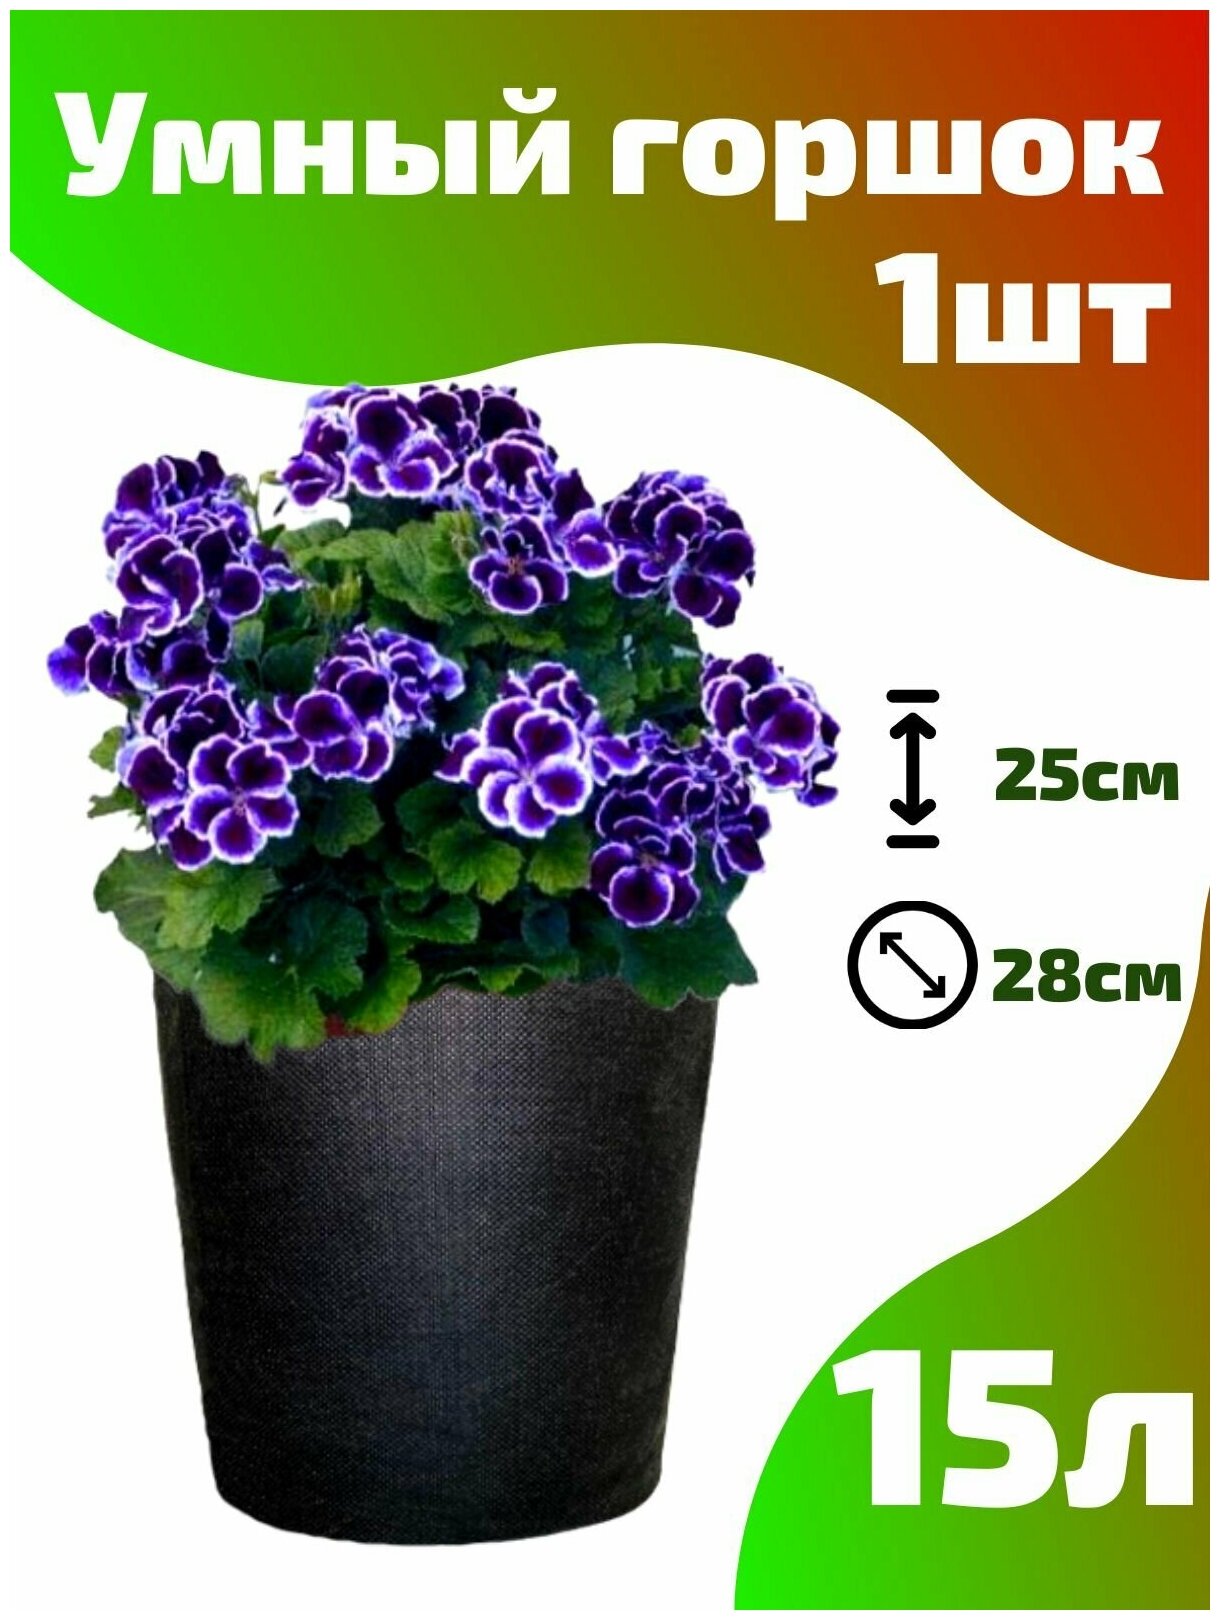 Горшок текстильный для рассады, растений, цветов Smart Pot - 15 л 1 шт.